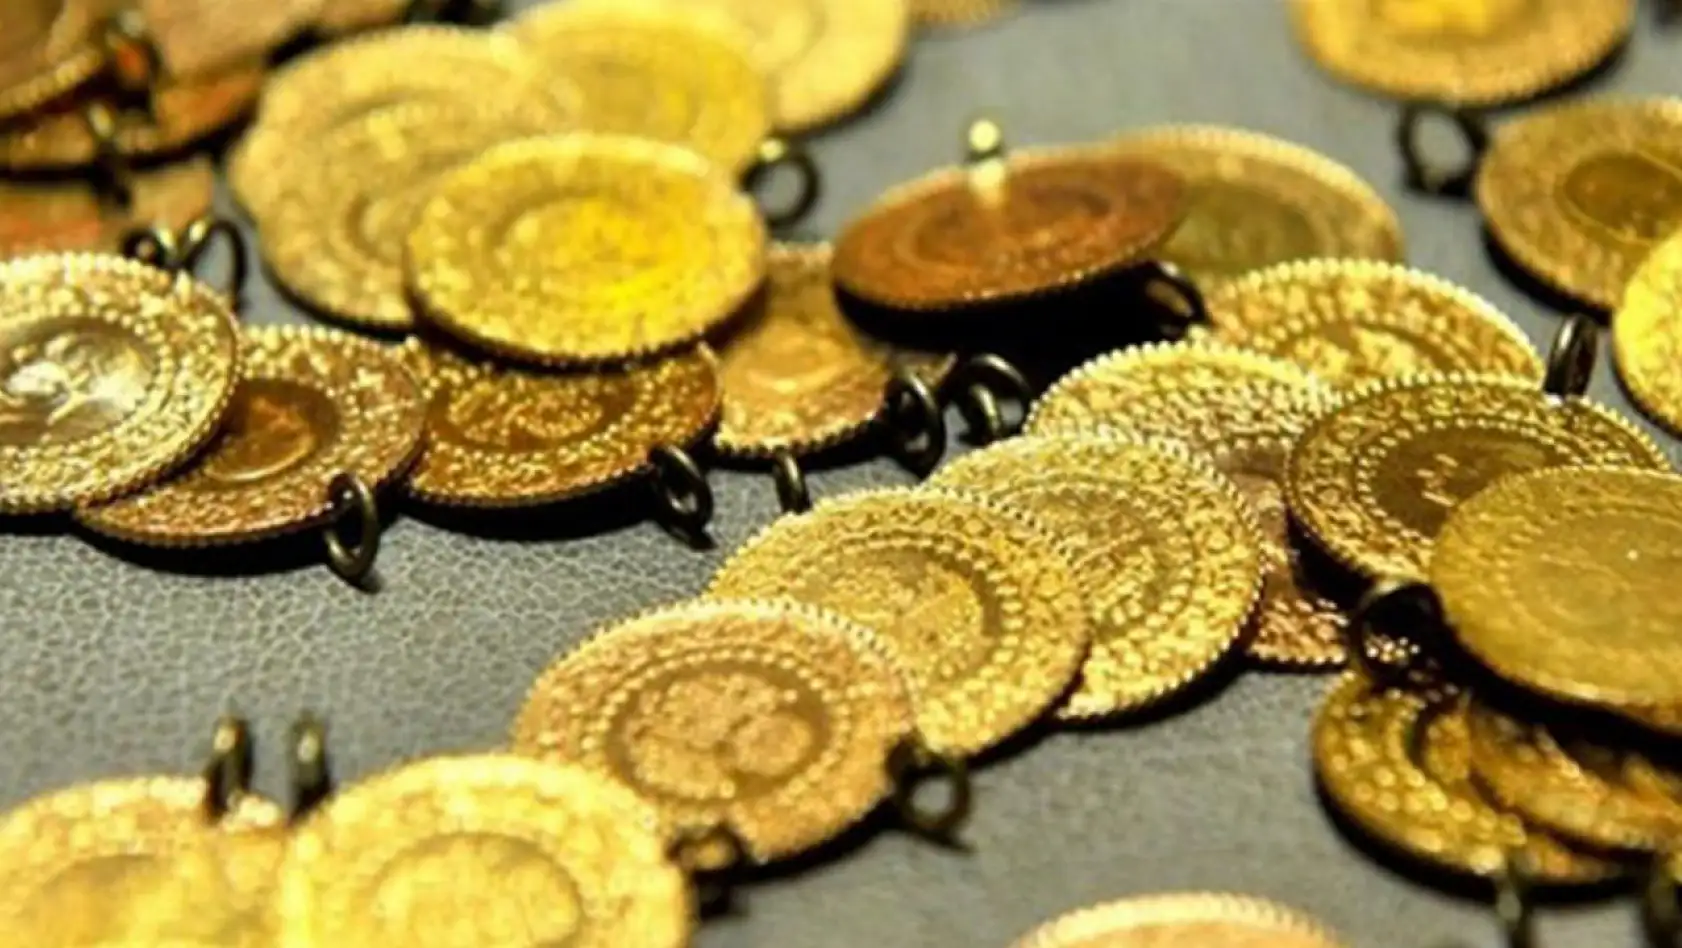 Elazığlılar Geç Olmadan Altın Fiyatları Yükselişte